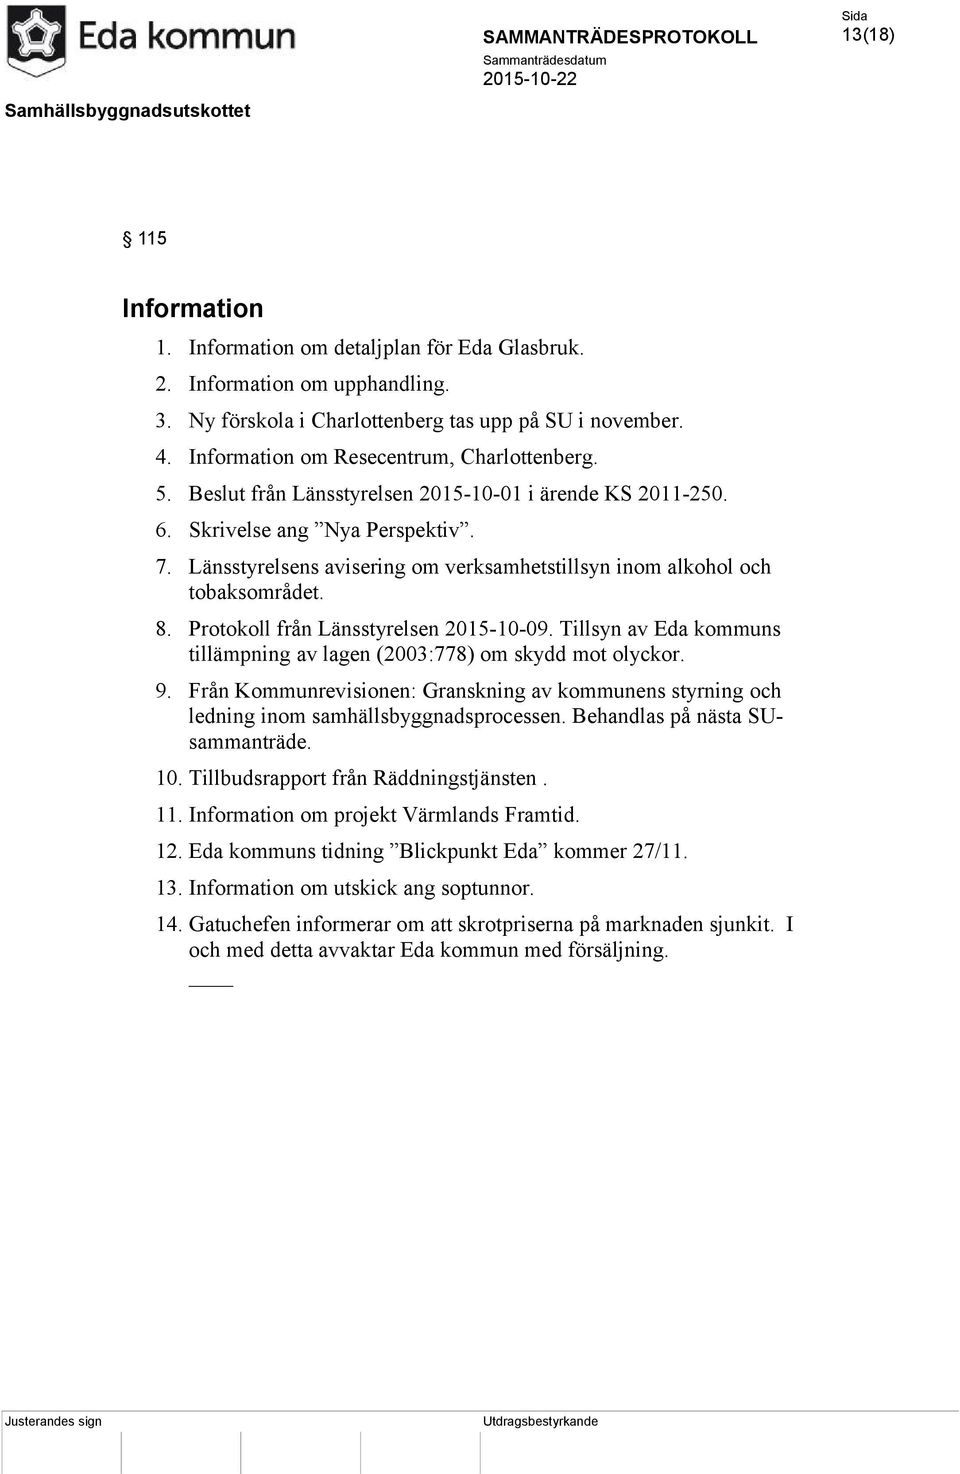 Länsstyrelsens avisering om verksamhetstillsyn inom alkohol och tobaksområdet. 8. Protokoll från Länsstyrelsen 2015-10-09. Tillsyn av Eda kommuns tillämpning av lagen (2003:778) om skydd mot olyckor.